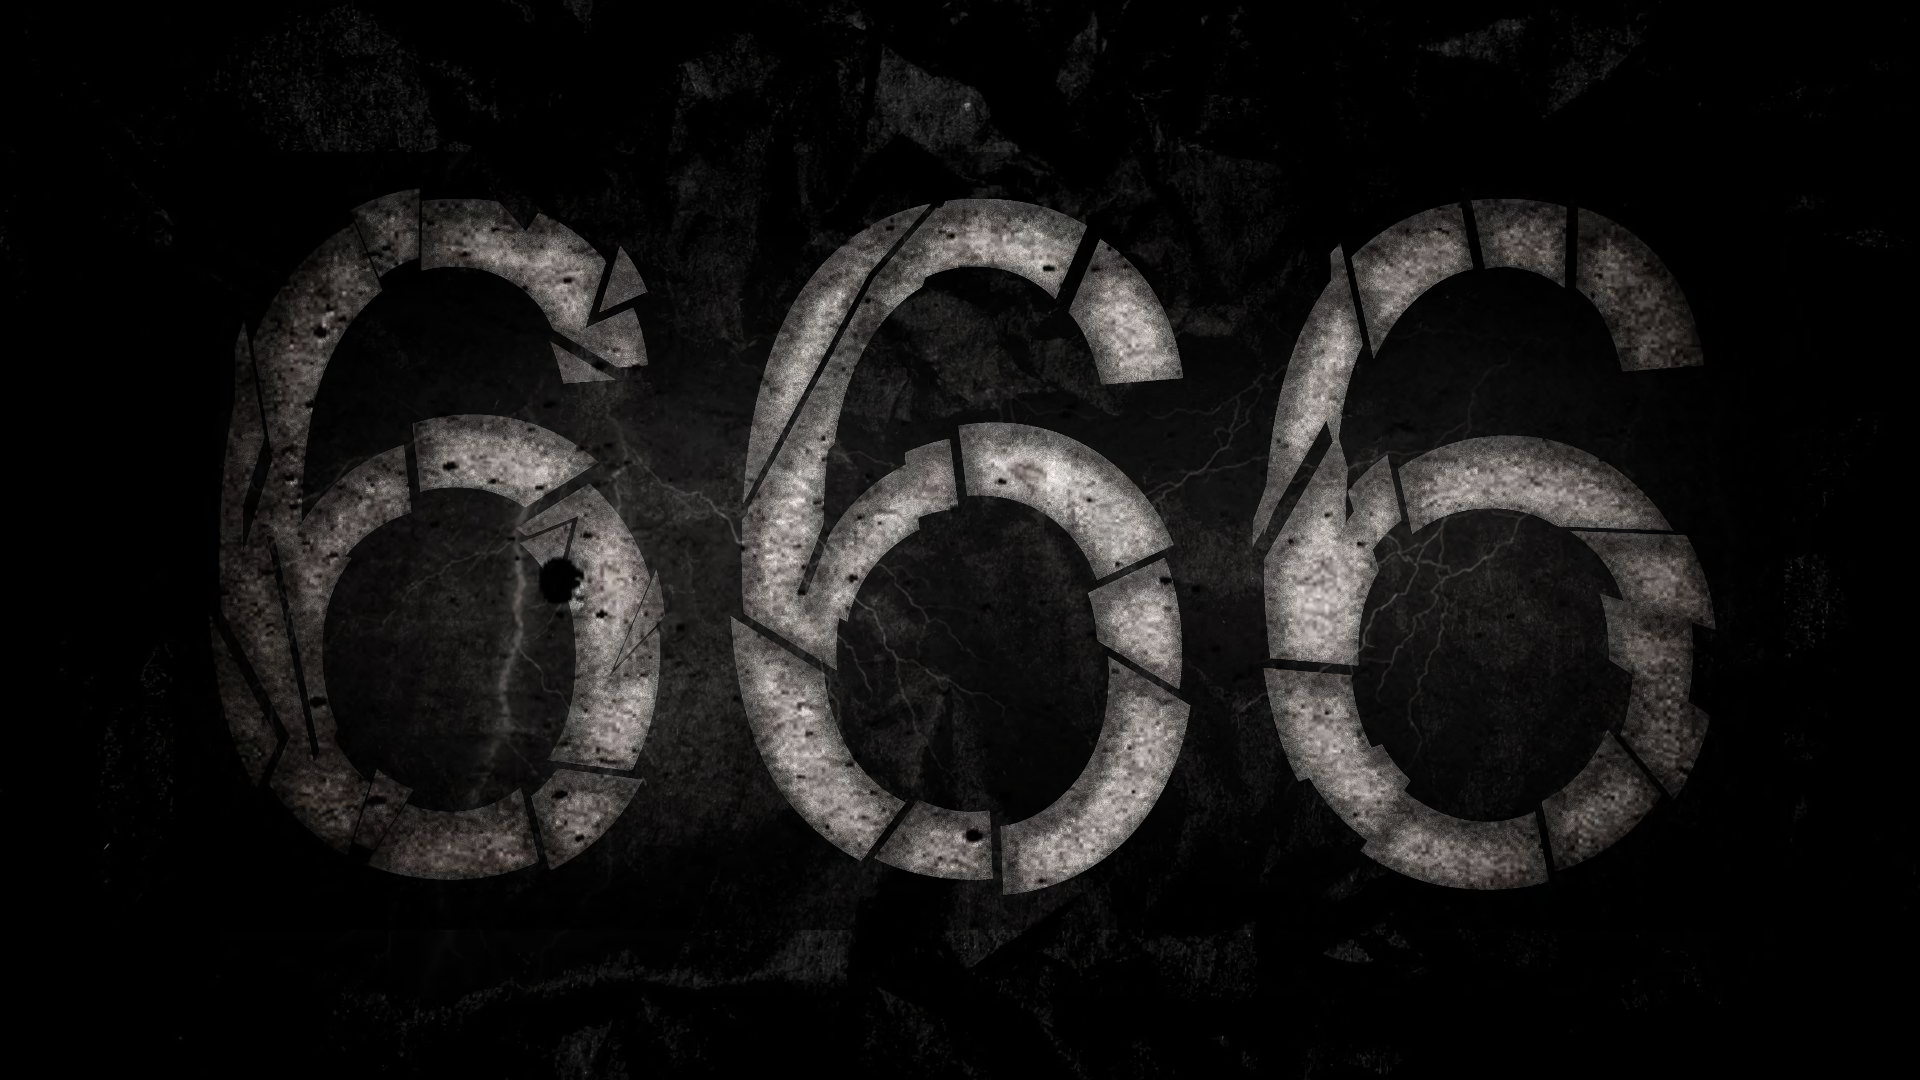 Khám phá ngay hình nền số 666 cực kì bắt mắt và độc đáo với những gam màu sắc nổi bật. Nó sẽ mang lại sự khác biệt đến cho màn hình của bạn và làm cho nó trở nên thú vị hơn bao giờ hết. Còn chần chờ gì nữa, tải ngay và trải nghiệm thôi!